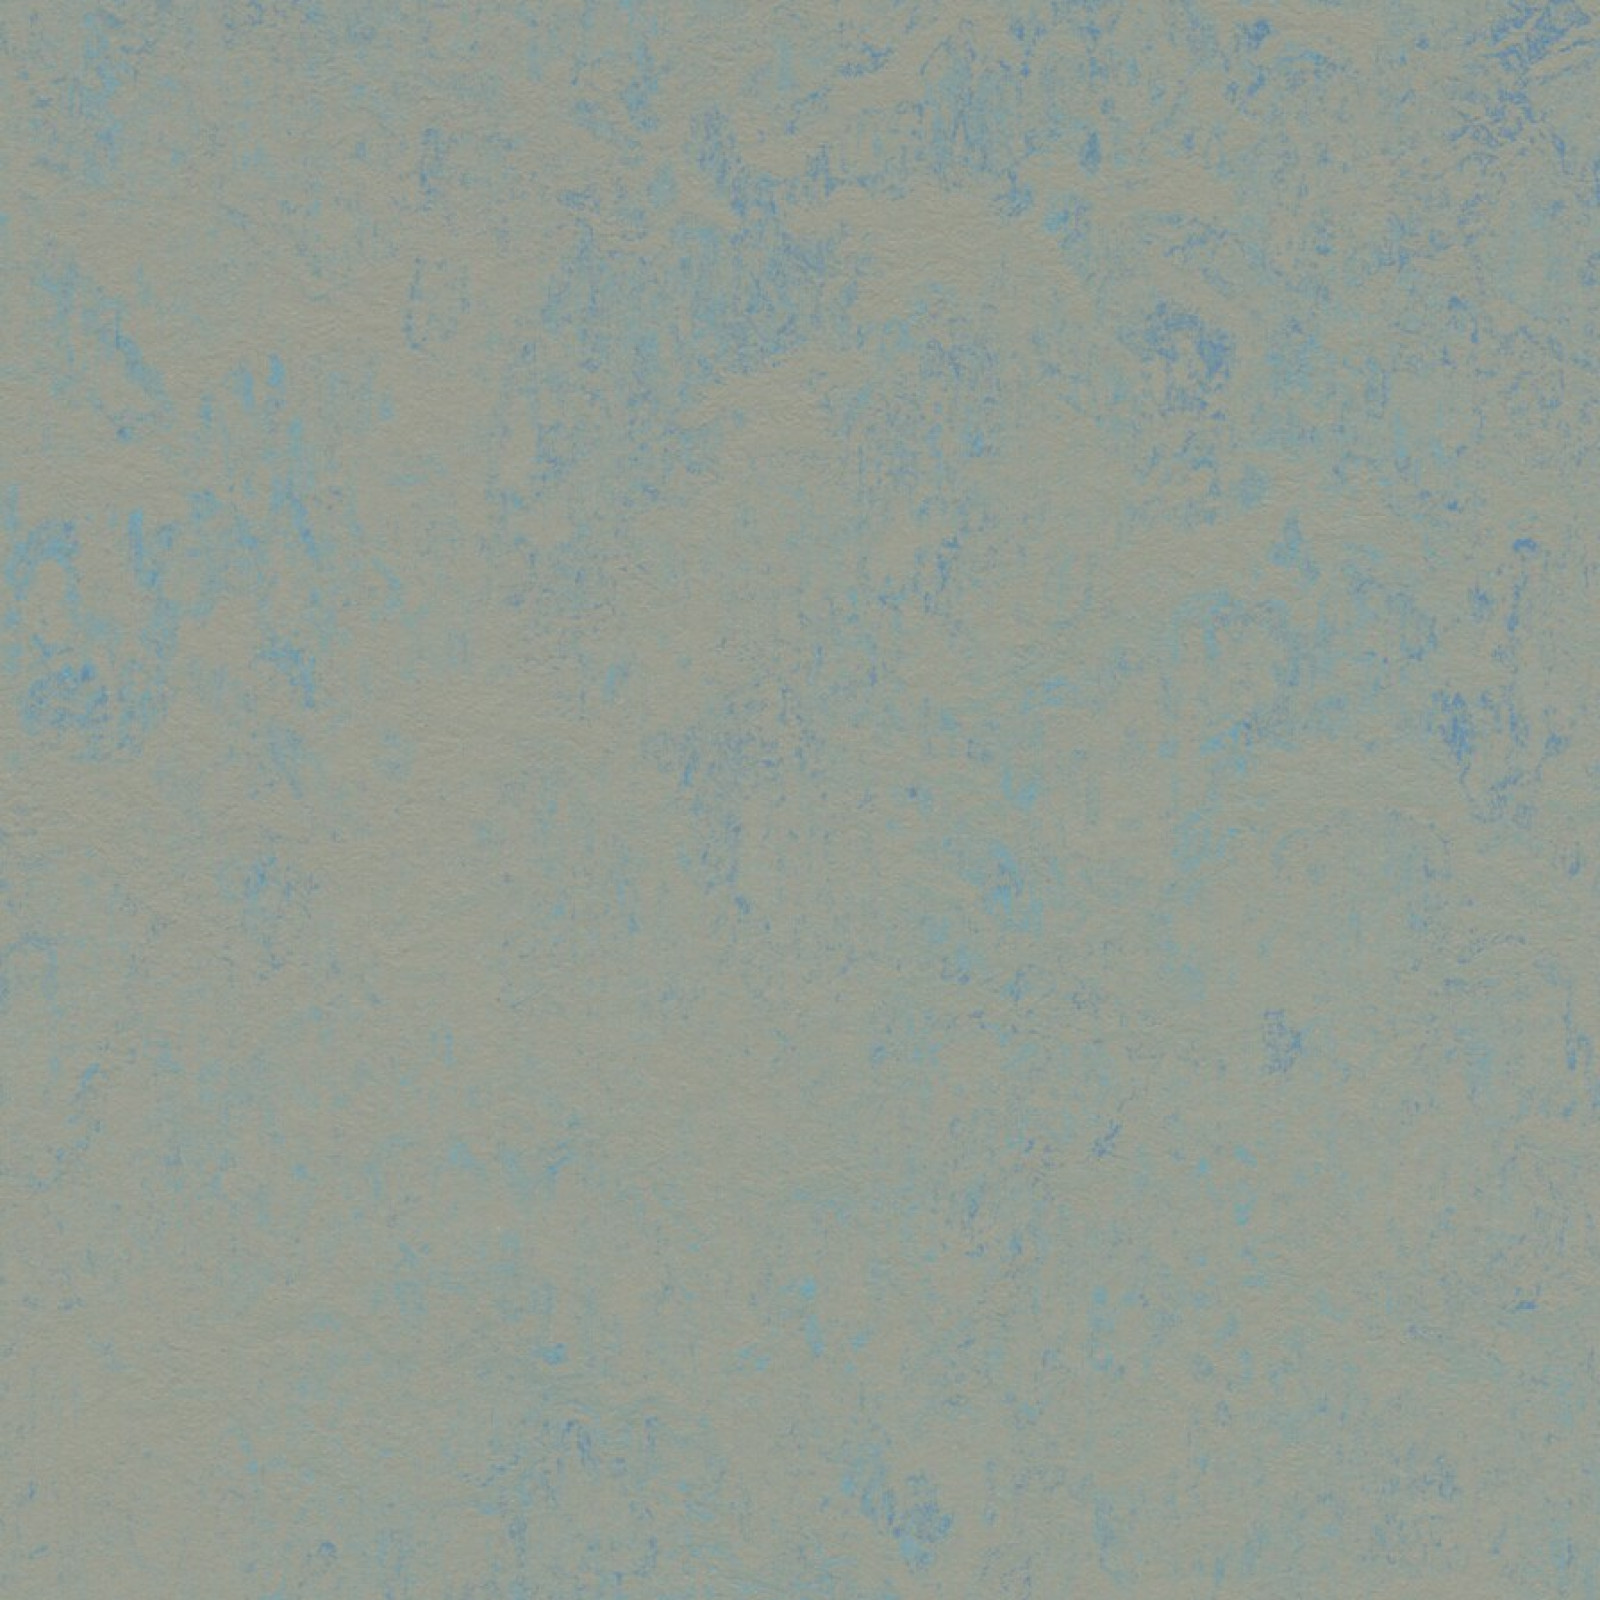 Vzor - 3763 blue shimmer